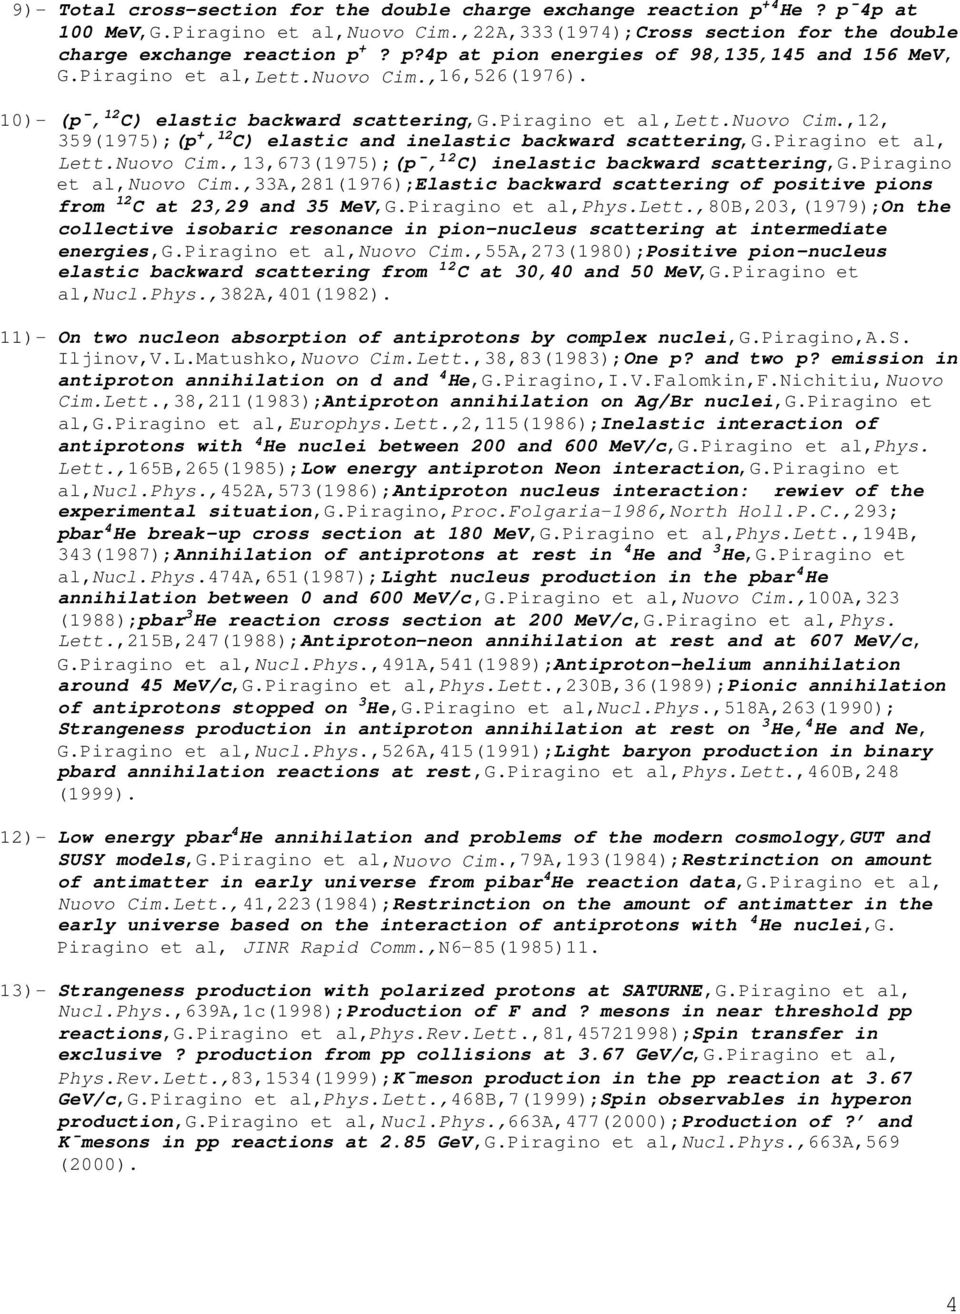 piragino et al, Lett.Nuovo Cim.,13,673(1975);(p, 12 C) inelastic backward scattering,g.piragino et al,nuovo Cim.